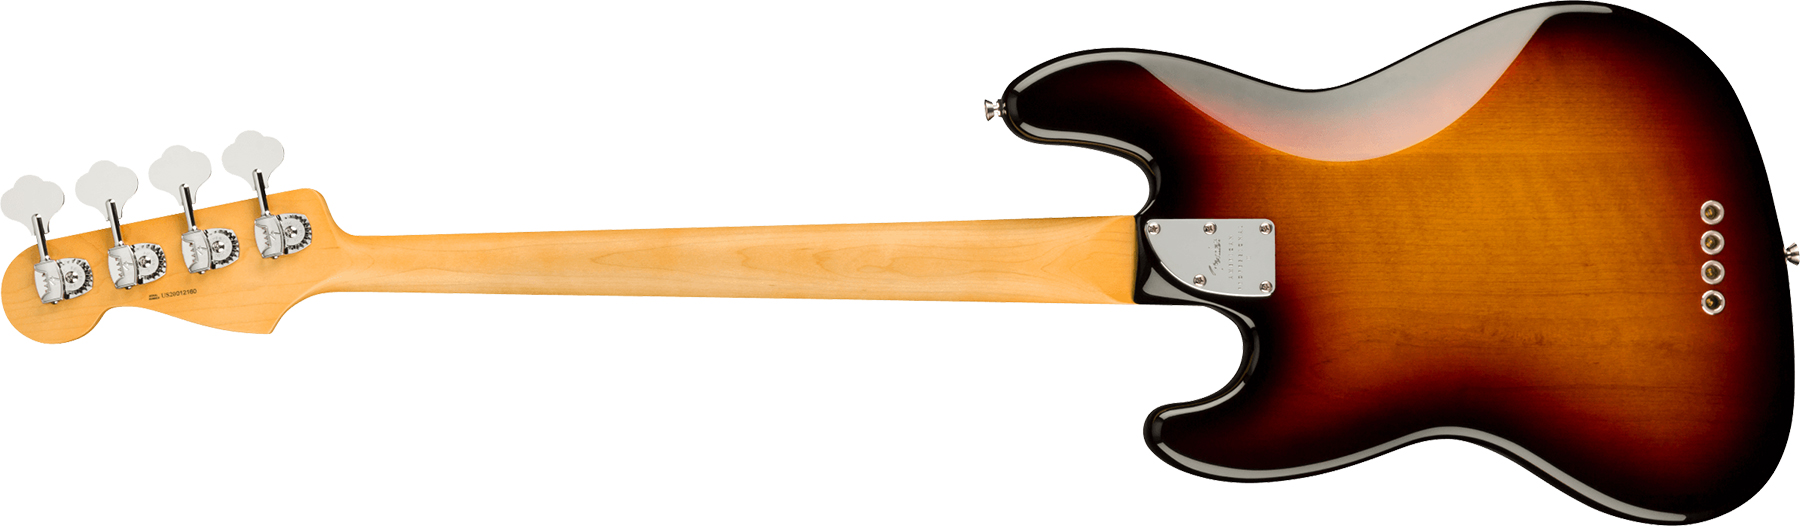 Fender Jazz Bass American Professional Ii Usa Rw - 3-color Sunburst - Bajo eléctrico de cuerpo sólido - Variation 1